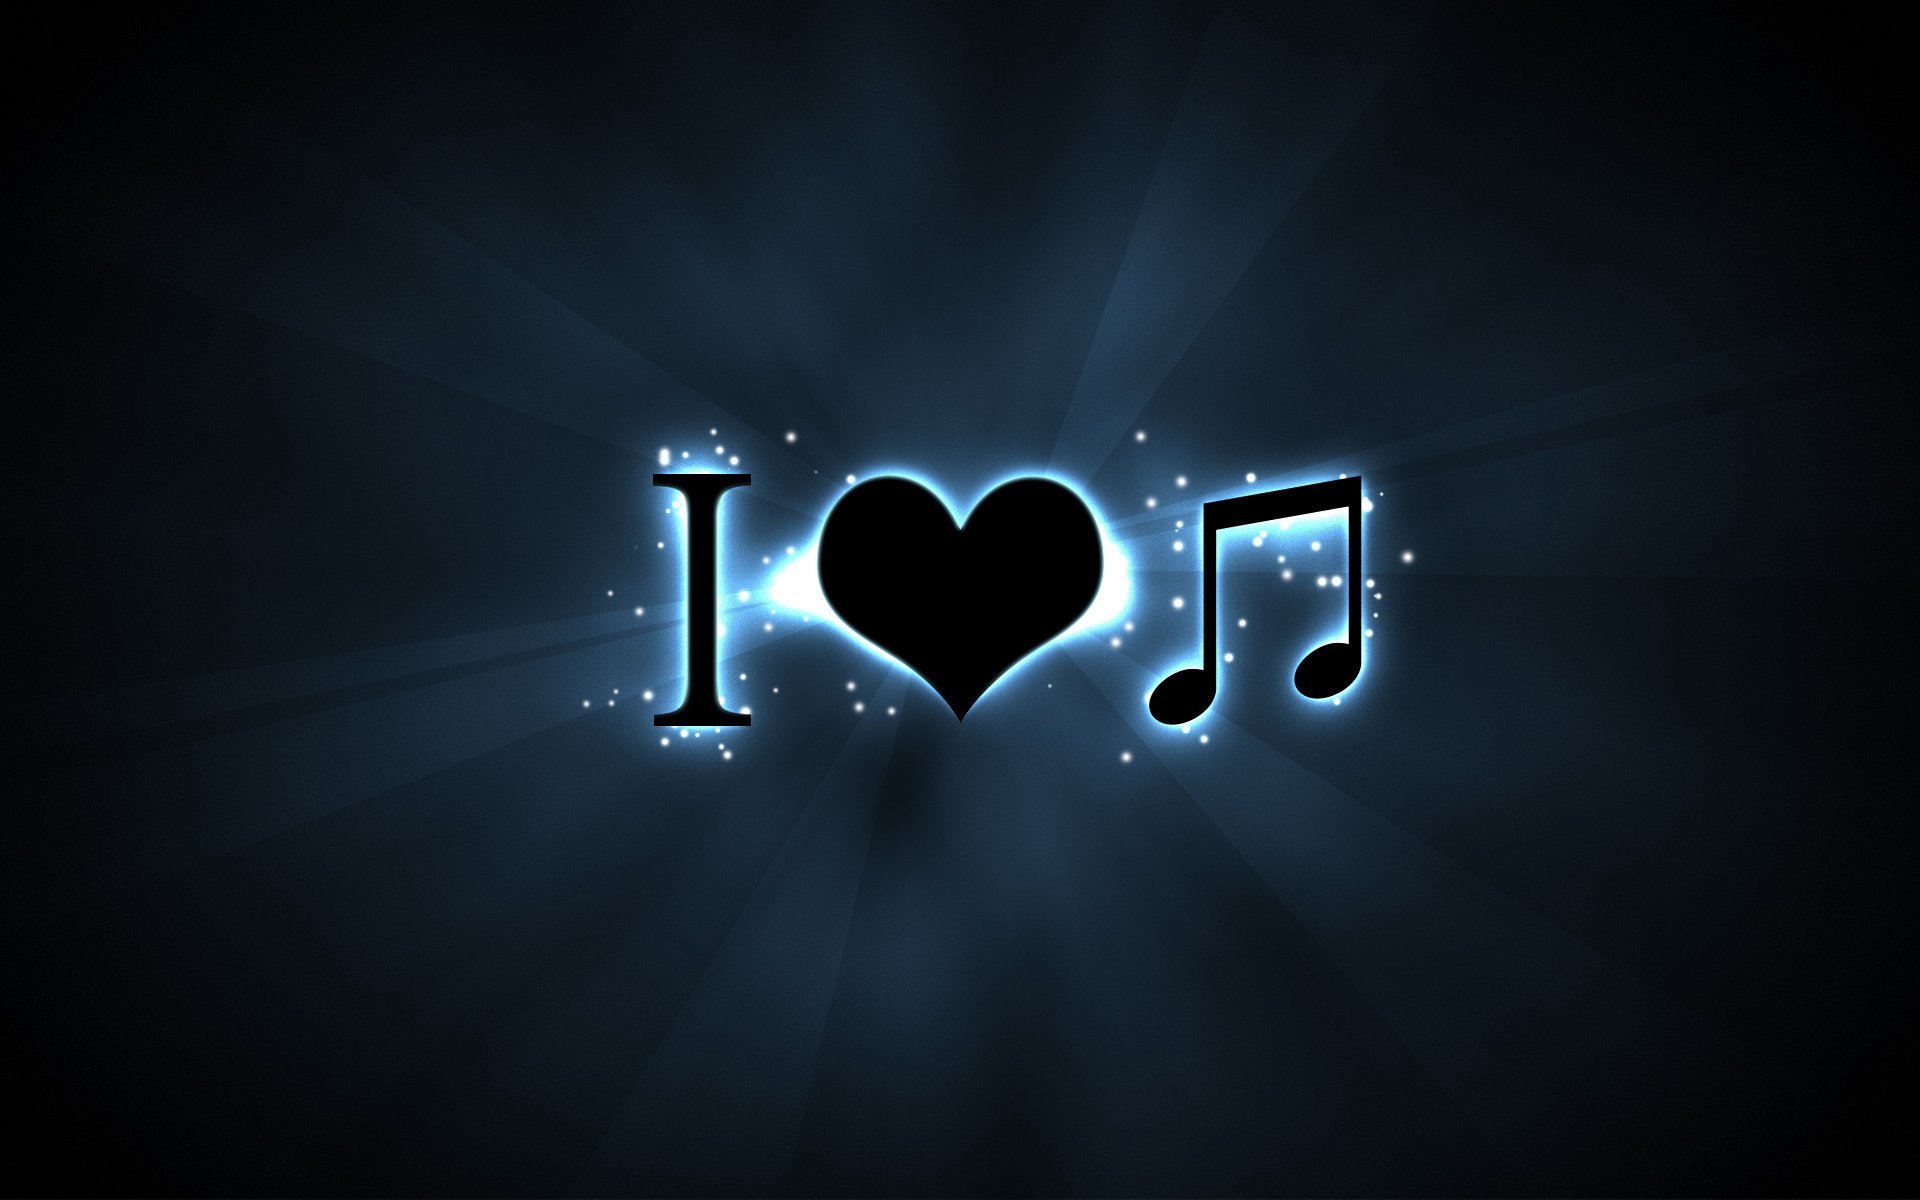 Я люблю музыку про любовь. Музыку для души